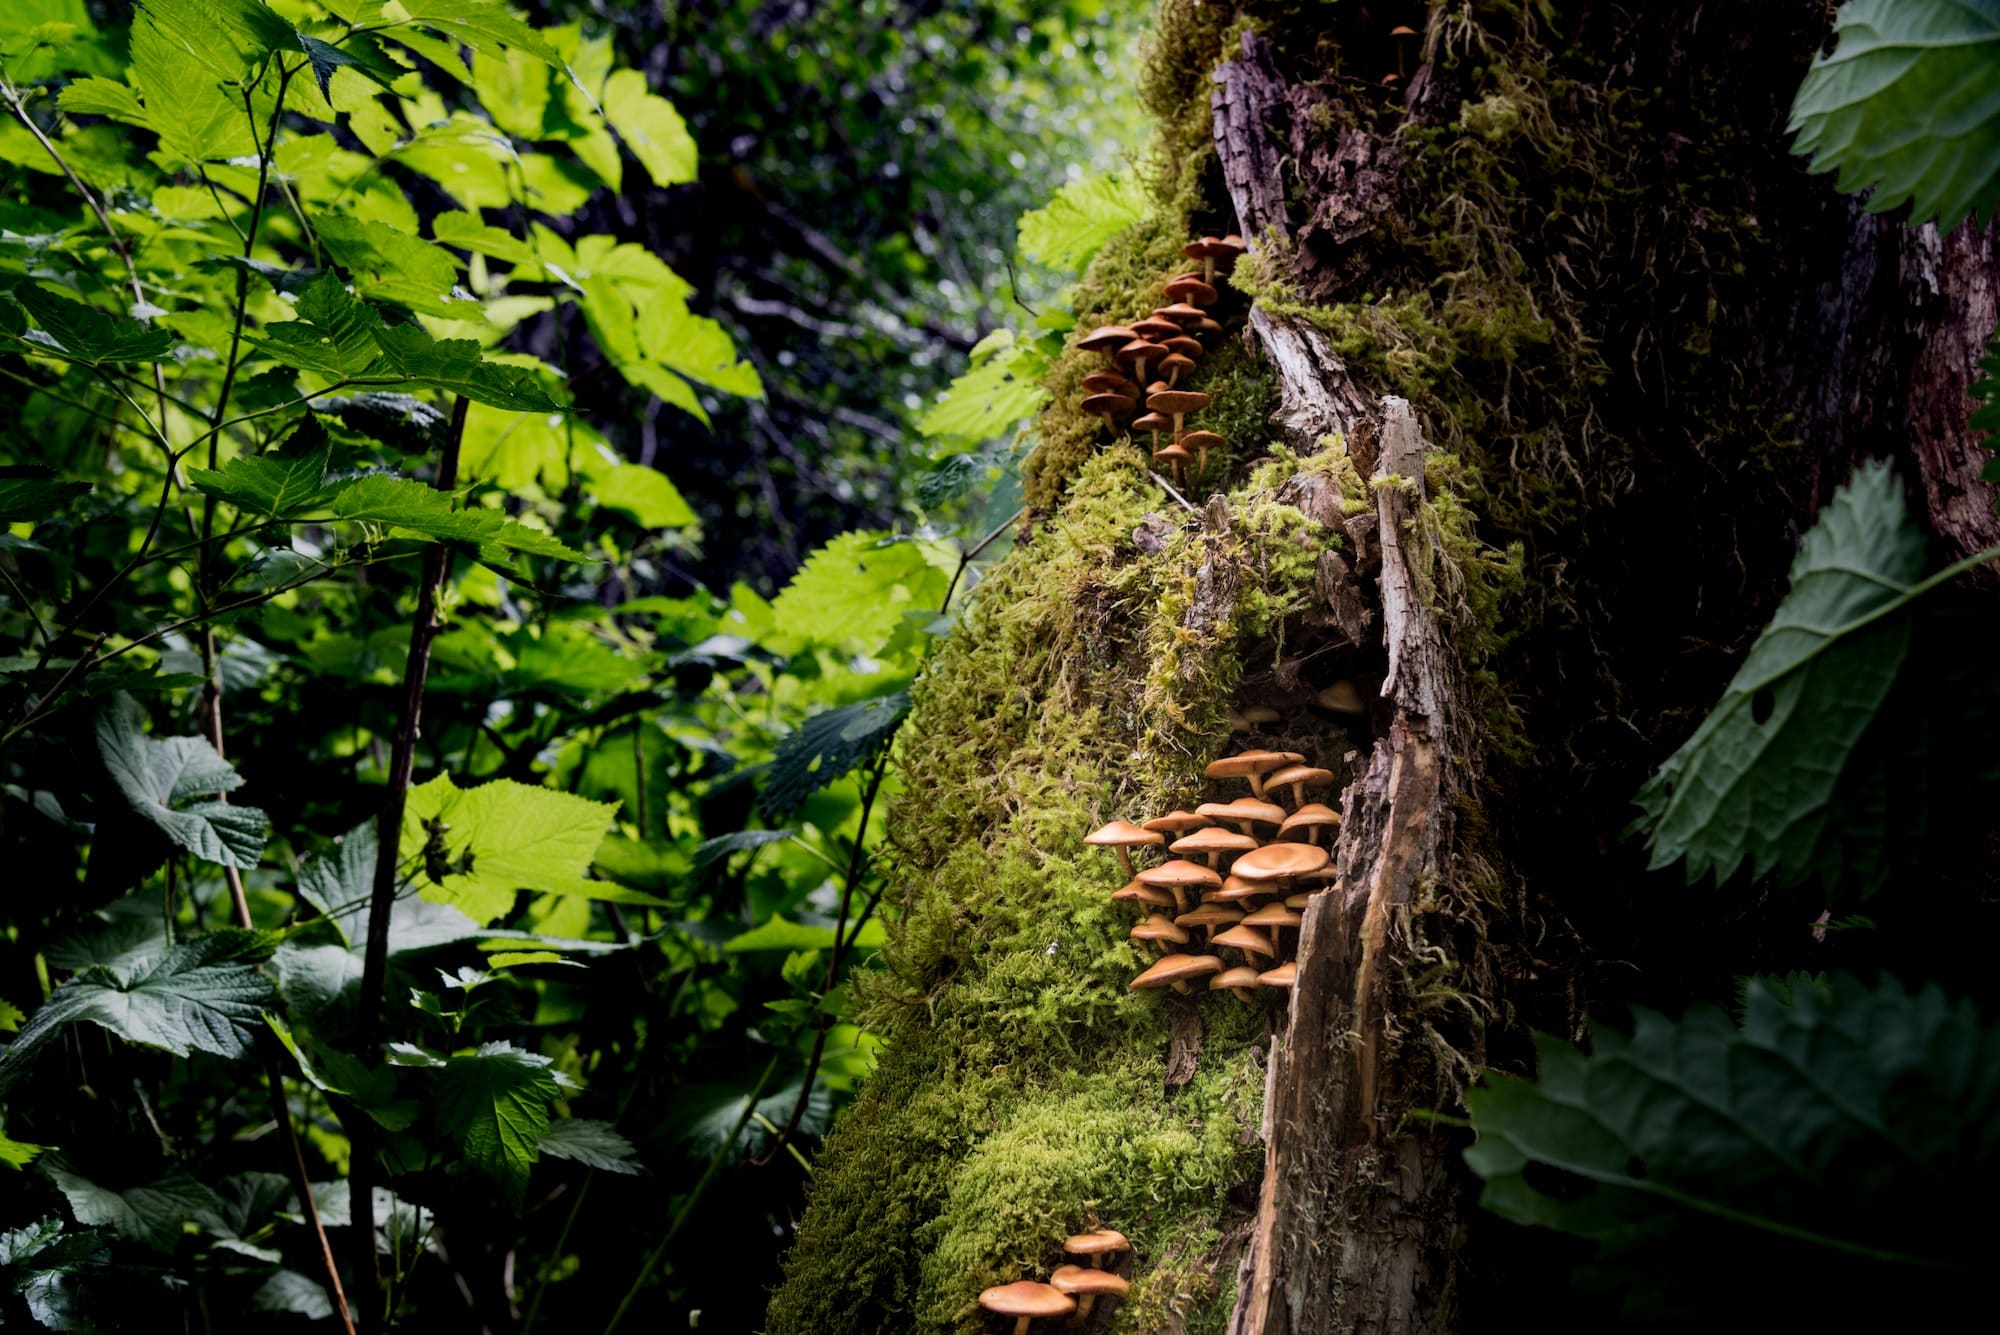 Colonia de hongos silvestres creciendo en un bosque tropical del noroeste del Pacífico. RLTheis